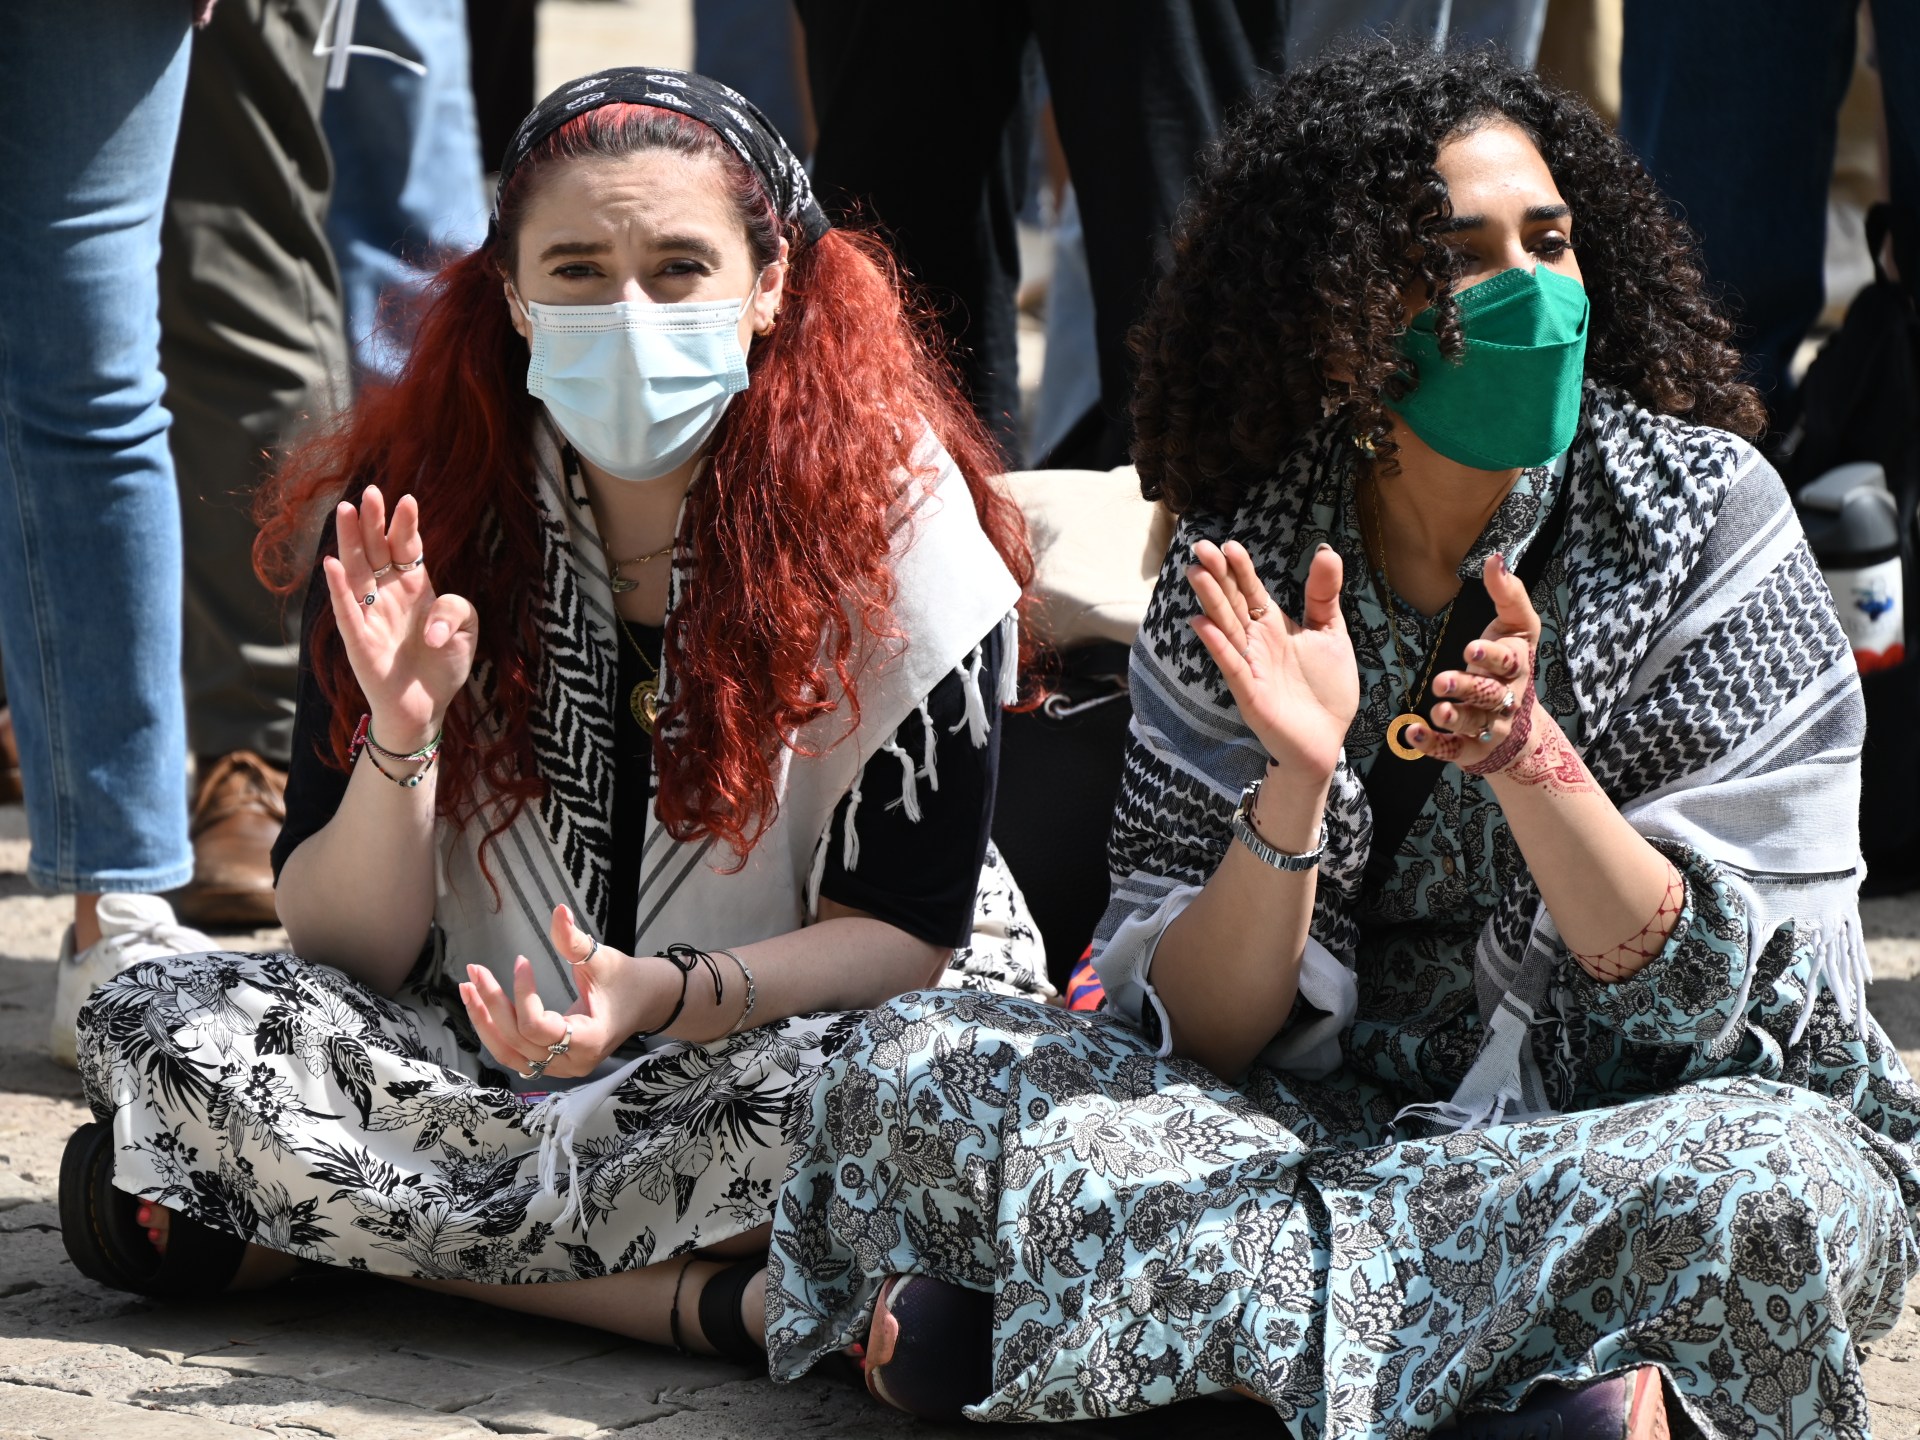 طلاب بجامعة برينستون الأميركية يضربون عن الطعام تضامنا مع غزة | أخبار – البوكس نيوز